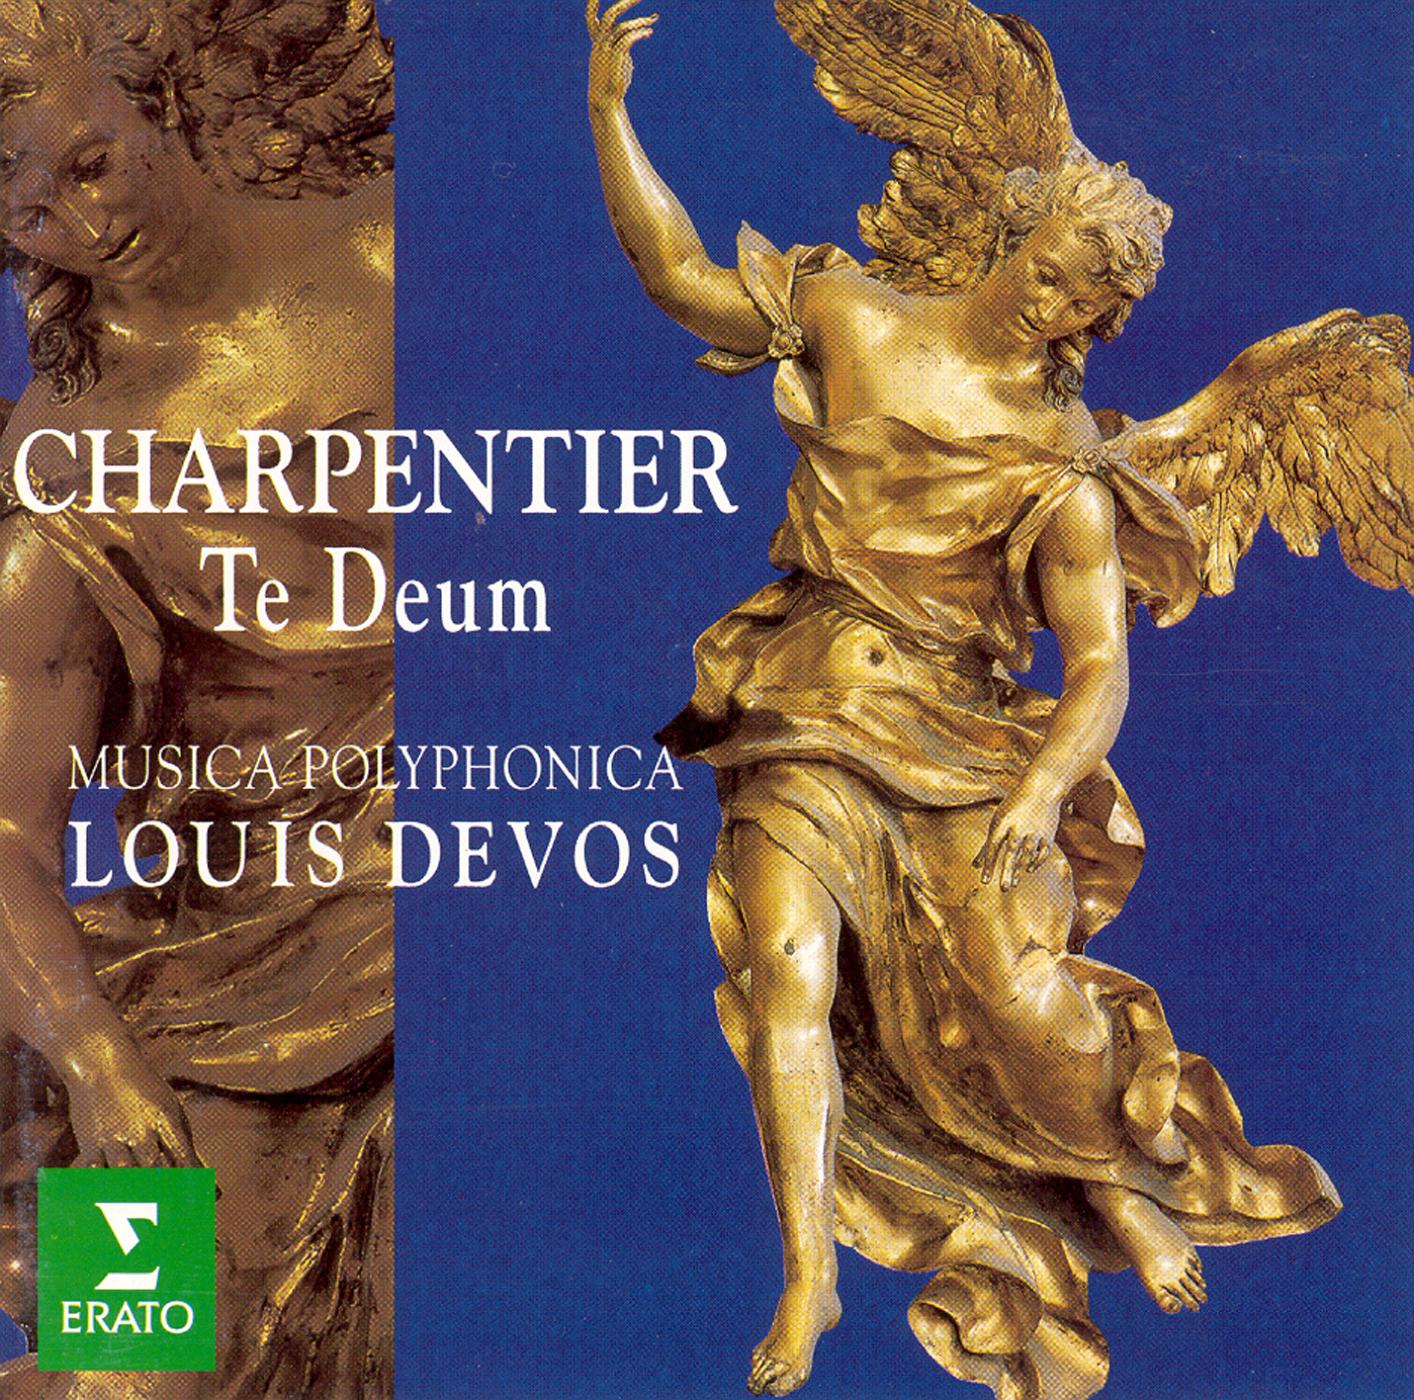 Charpentier:Canticum in honorem Sancti Ludovici regis galliae H365 : V Et praeliare bella Domini